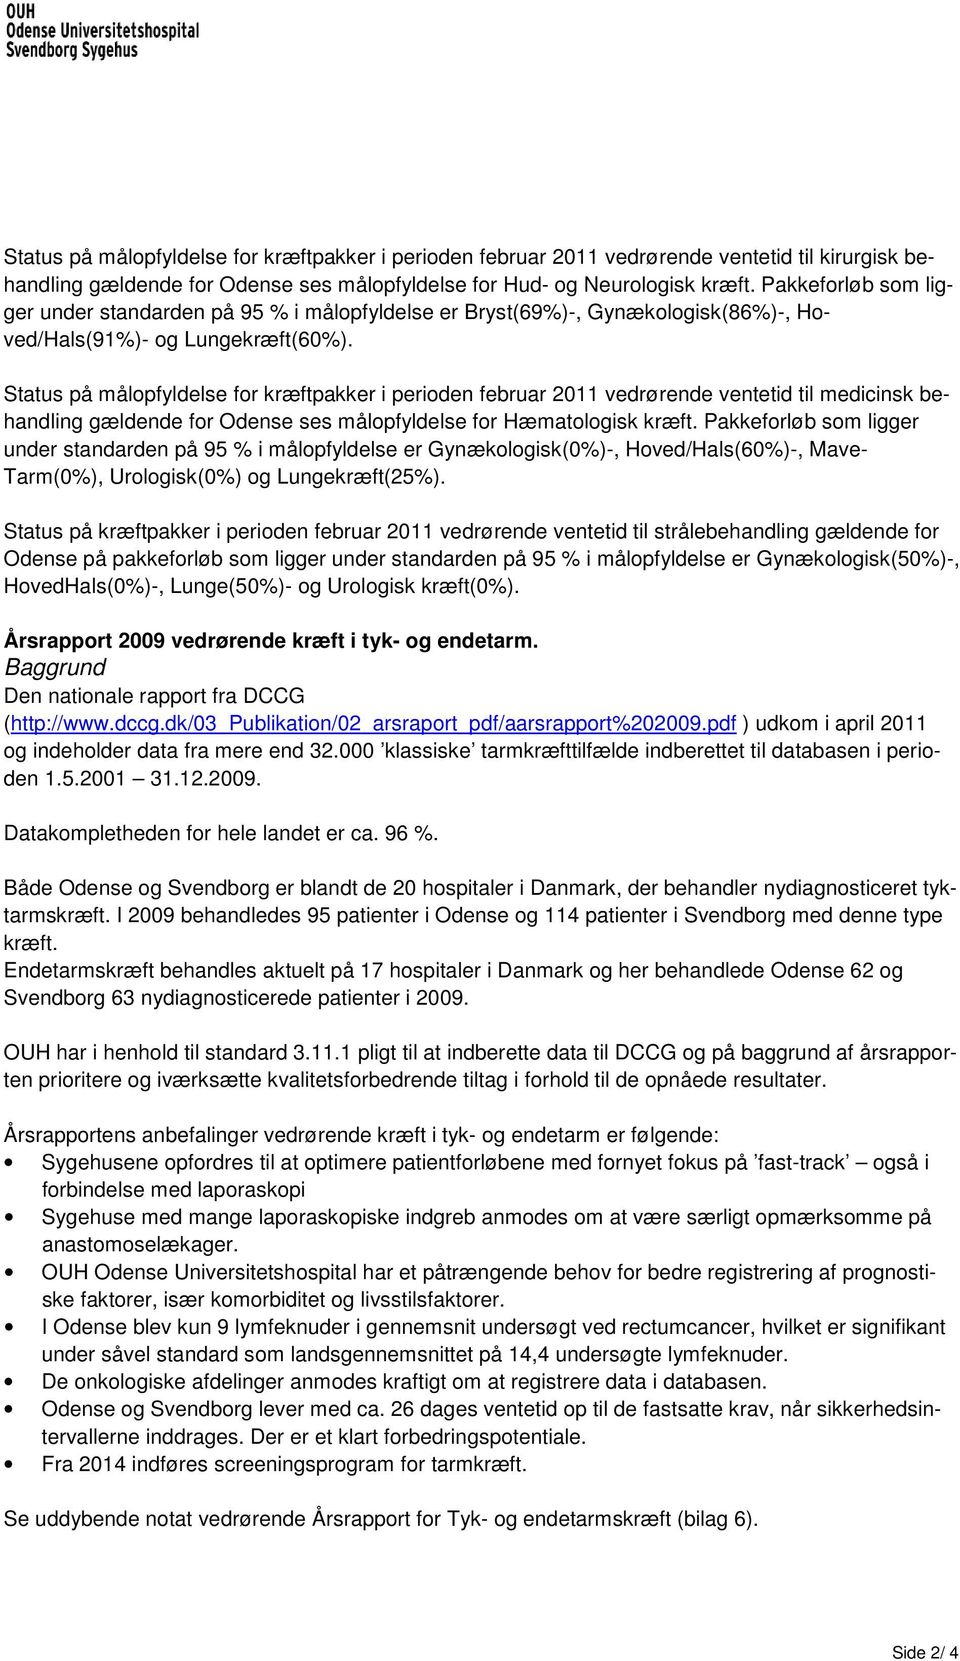 Status på målopfyldelse for kræftpakker i perioden februar 2011 vedrørende ventetid til medicinsk behandling gældende for Odense ses målopfyldelse for Hæmatologisk kræft.